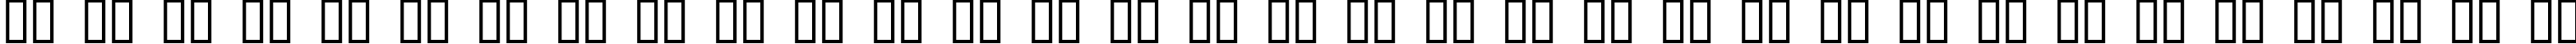 Пример написания русского алфавита шрифтом KraftUndStil